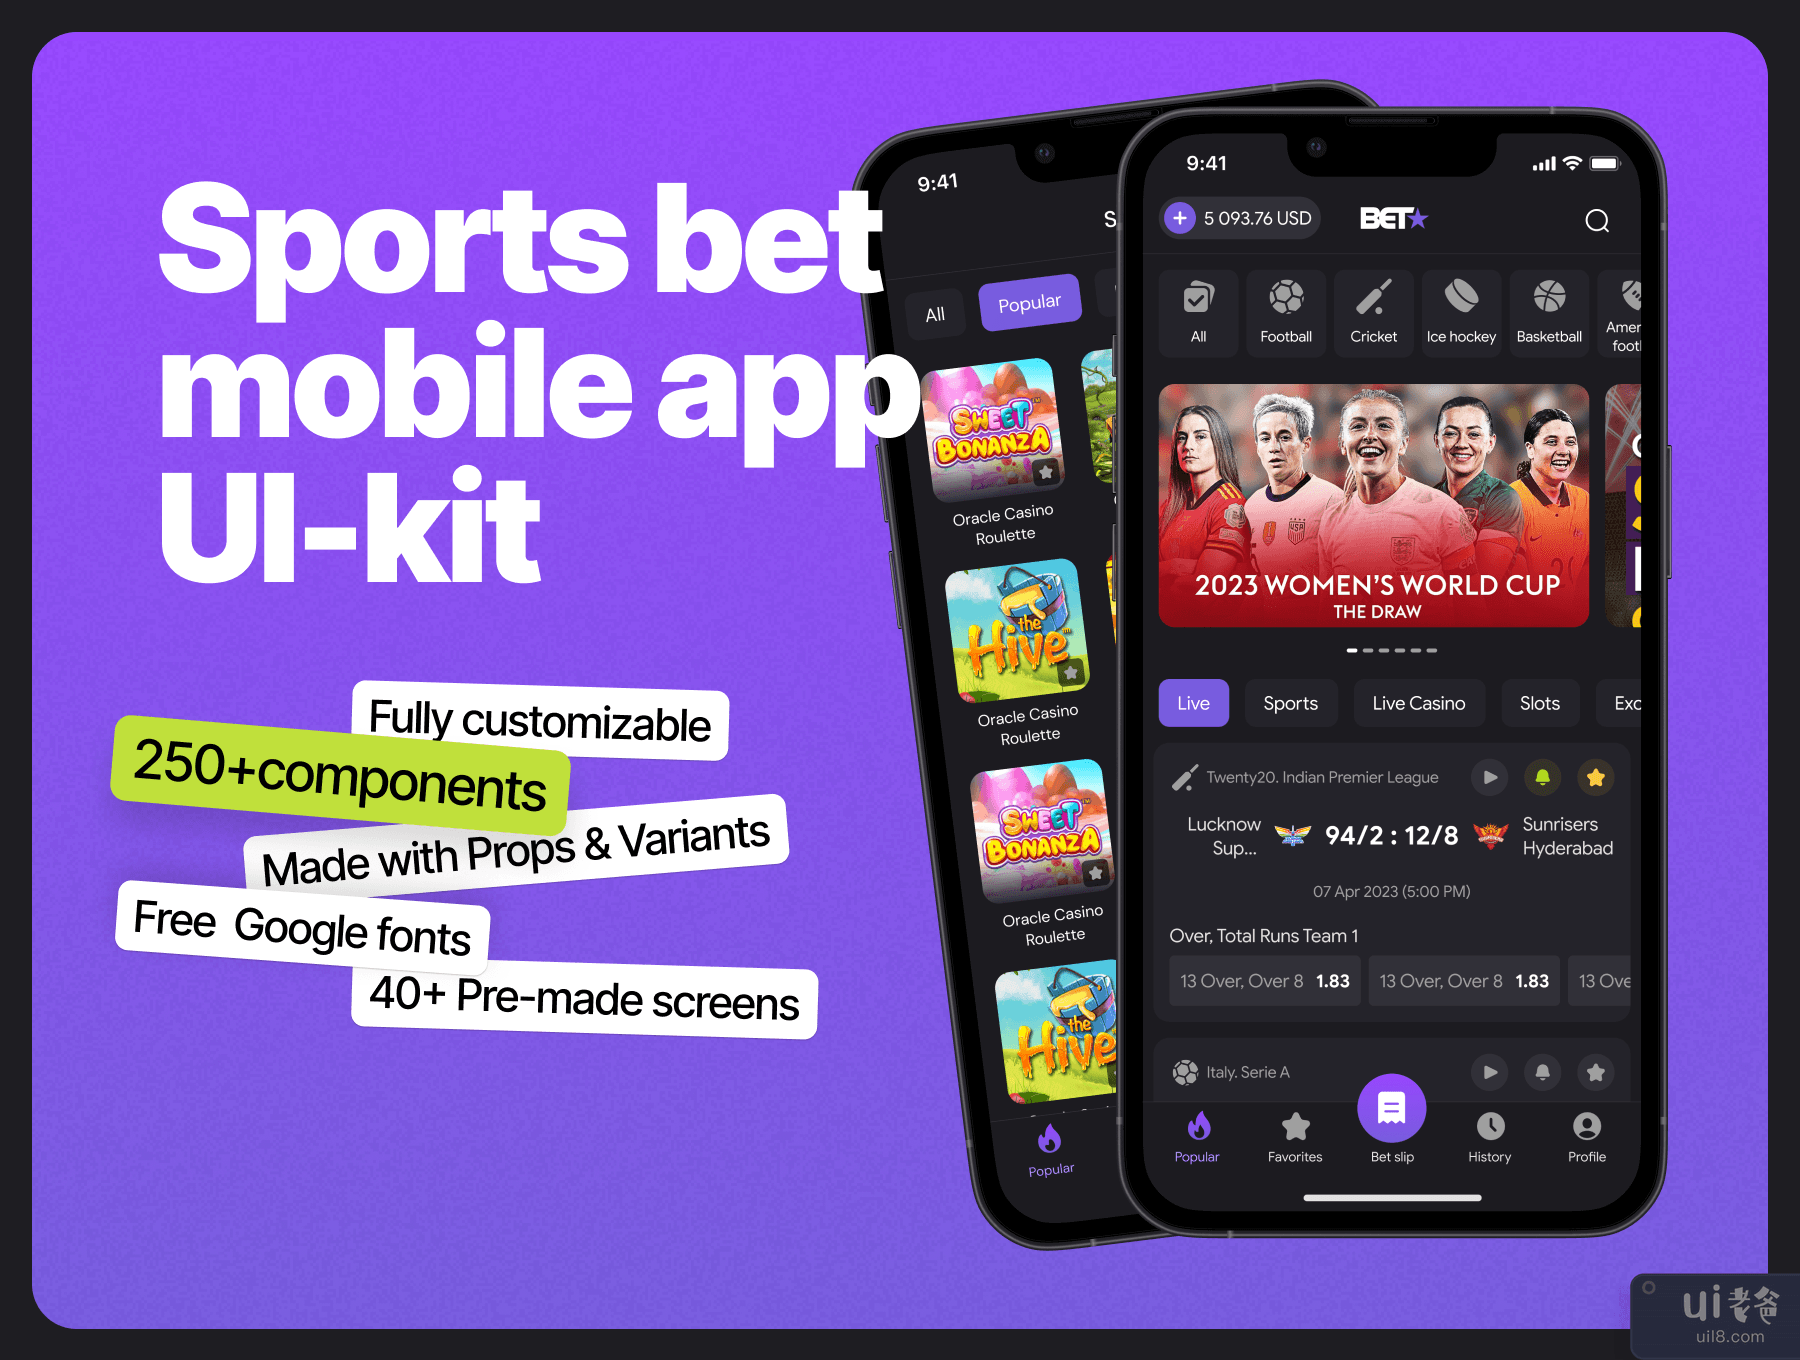 体育投注移动应用程序 UI 工具包 (Sports bet mobile app UI Kit)插图7